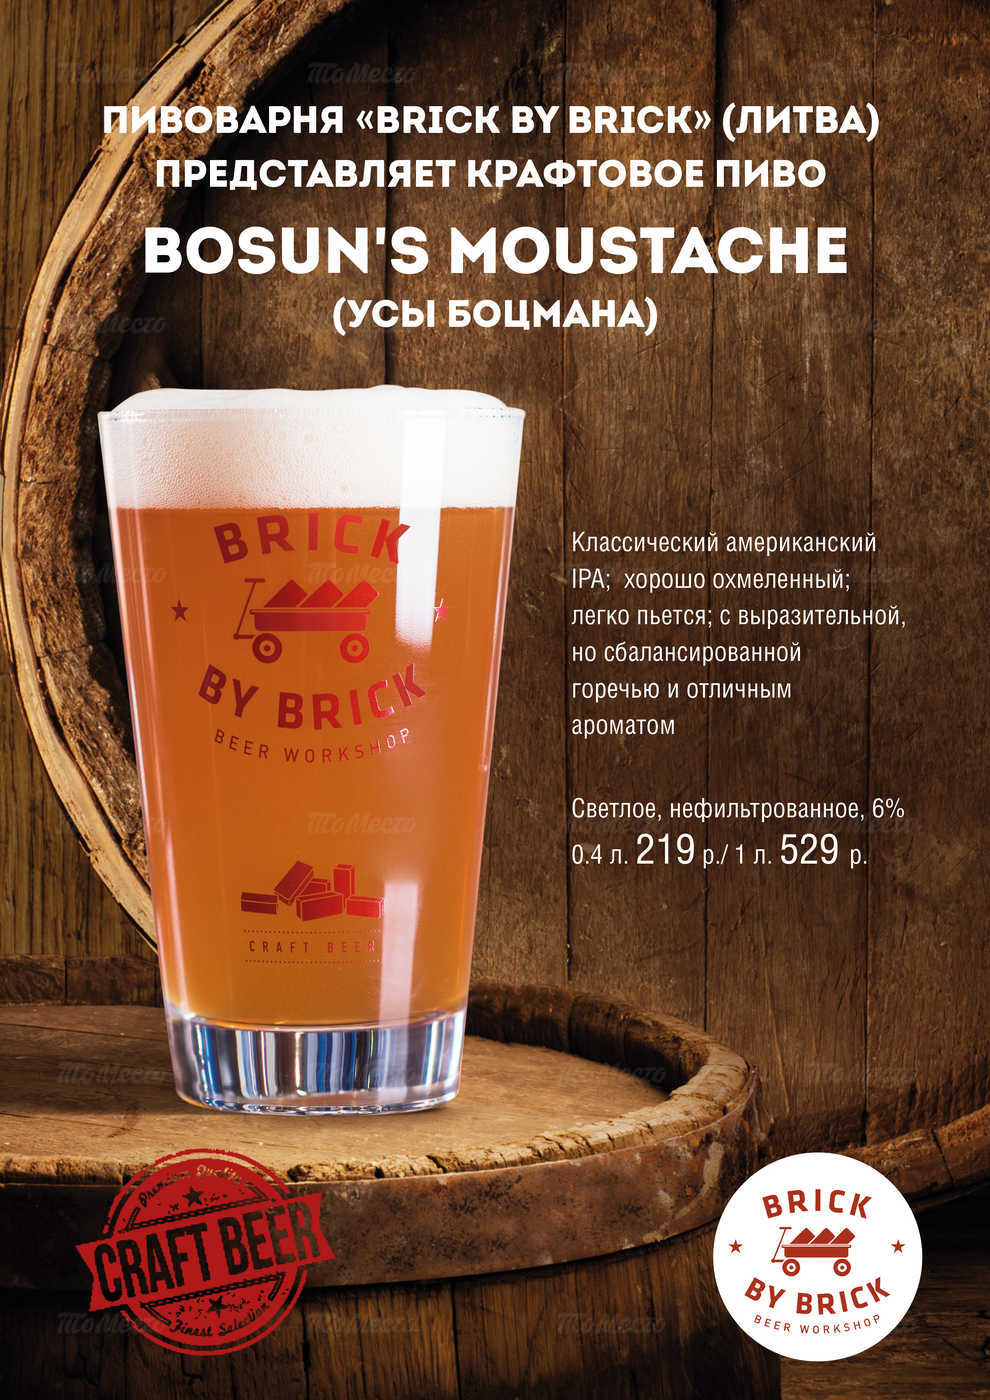 Представляем сезонное крафтовое пиво Bosun‘s Moustache (Усы Боцмана)